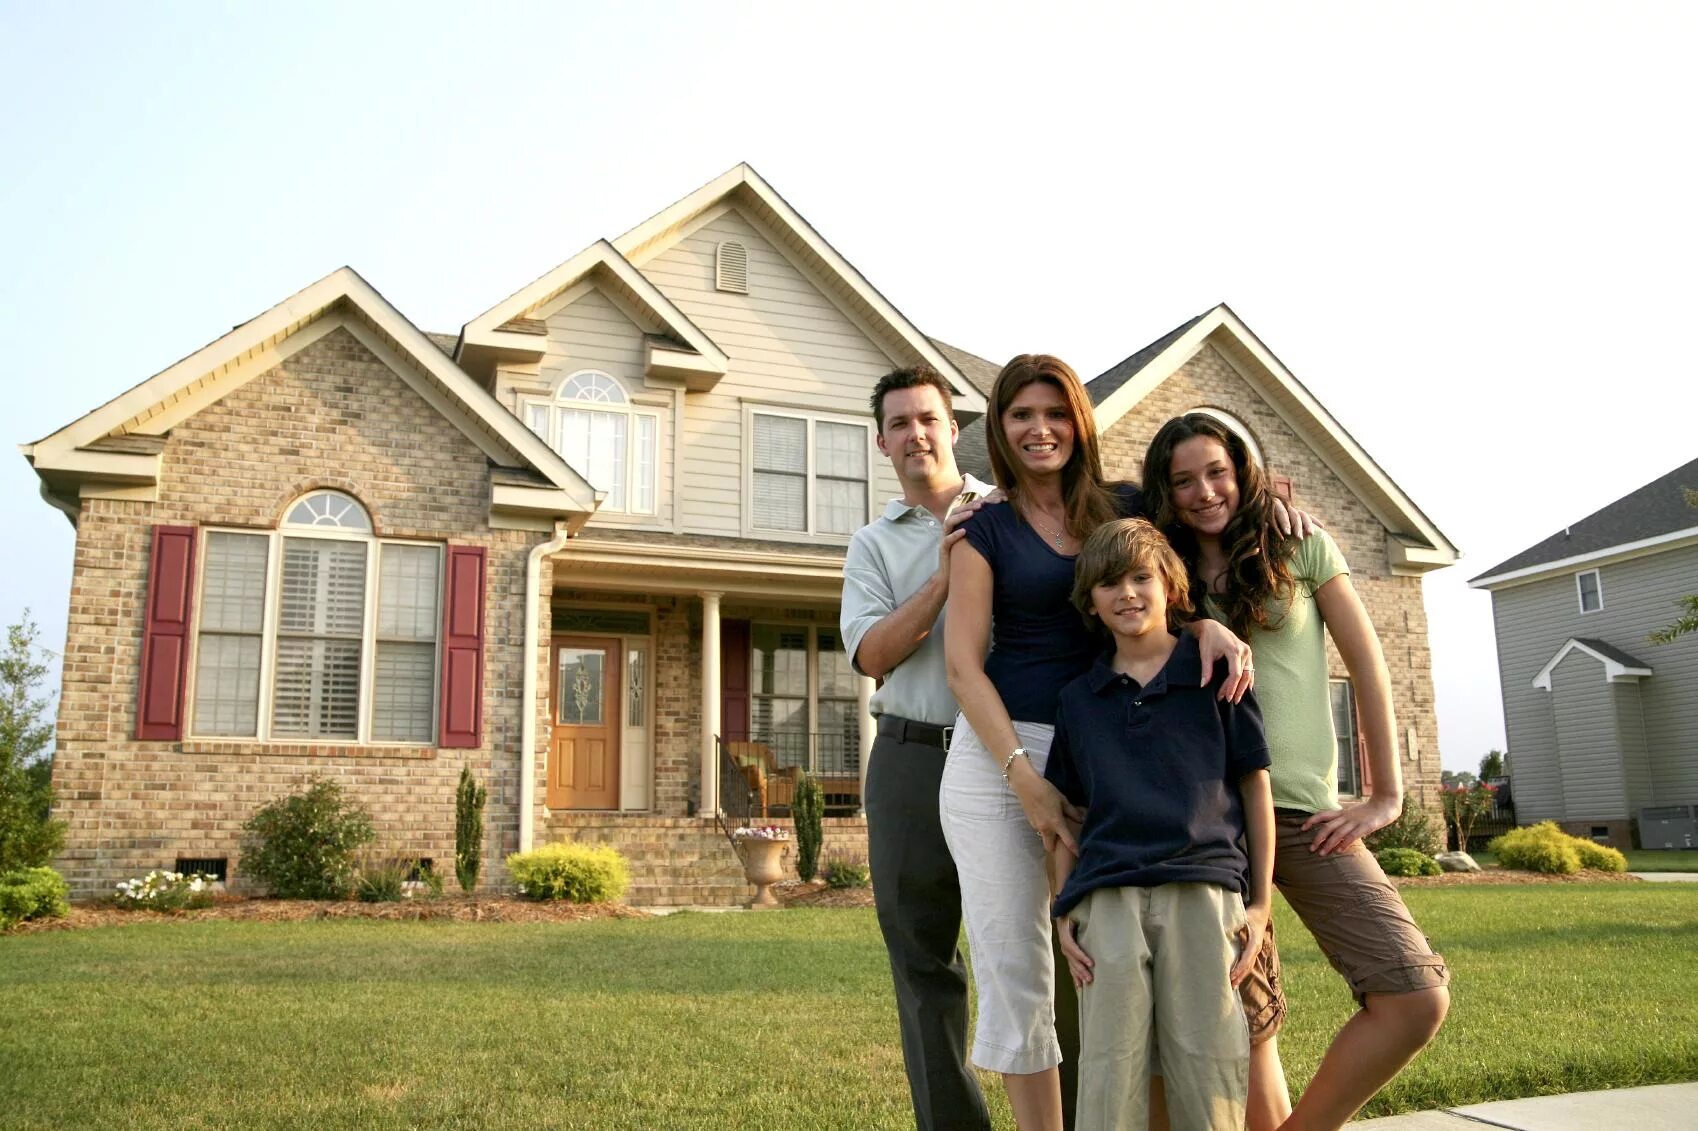 Купить дом молодой семье. Семья в загородном доме. Счастливая семья в доме. Красивый домик для семьи. Счастливая американская семья.